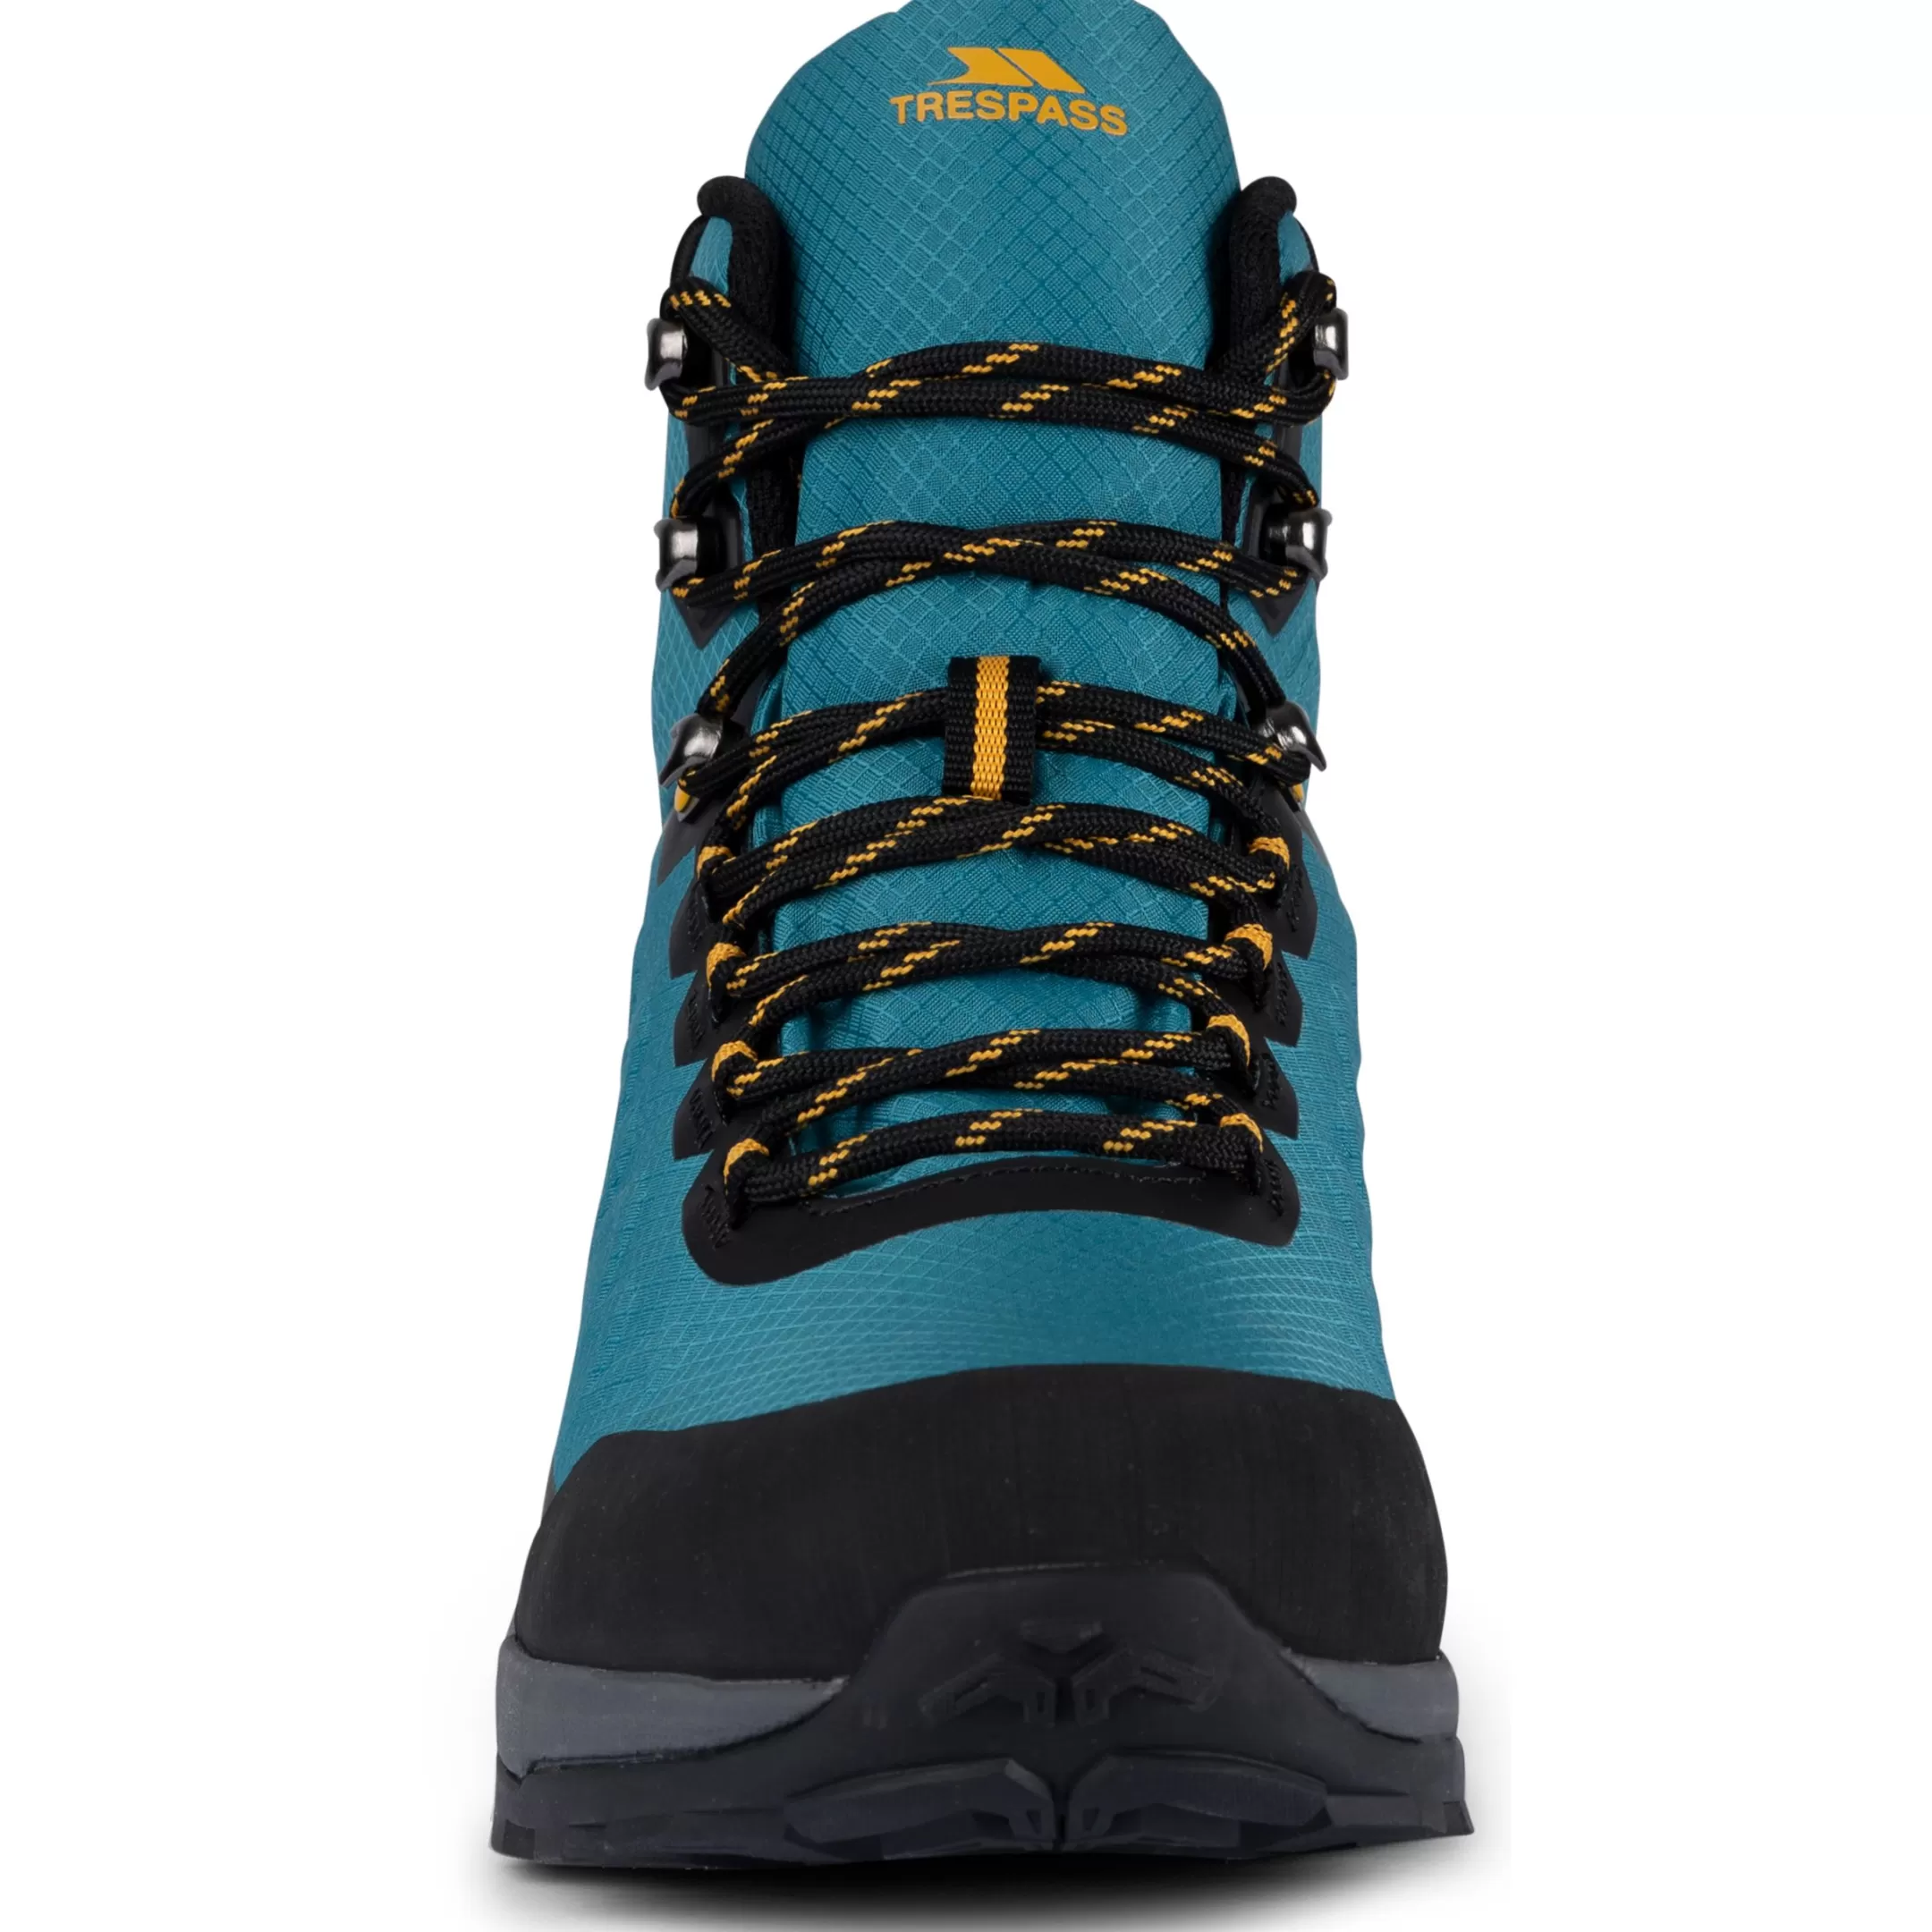 Unisex Adult Hiking Boots Orian | Trespass Cheap